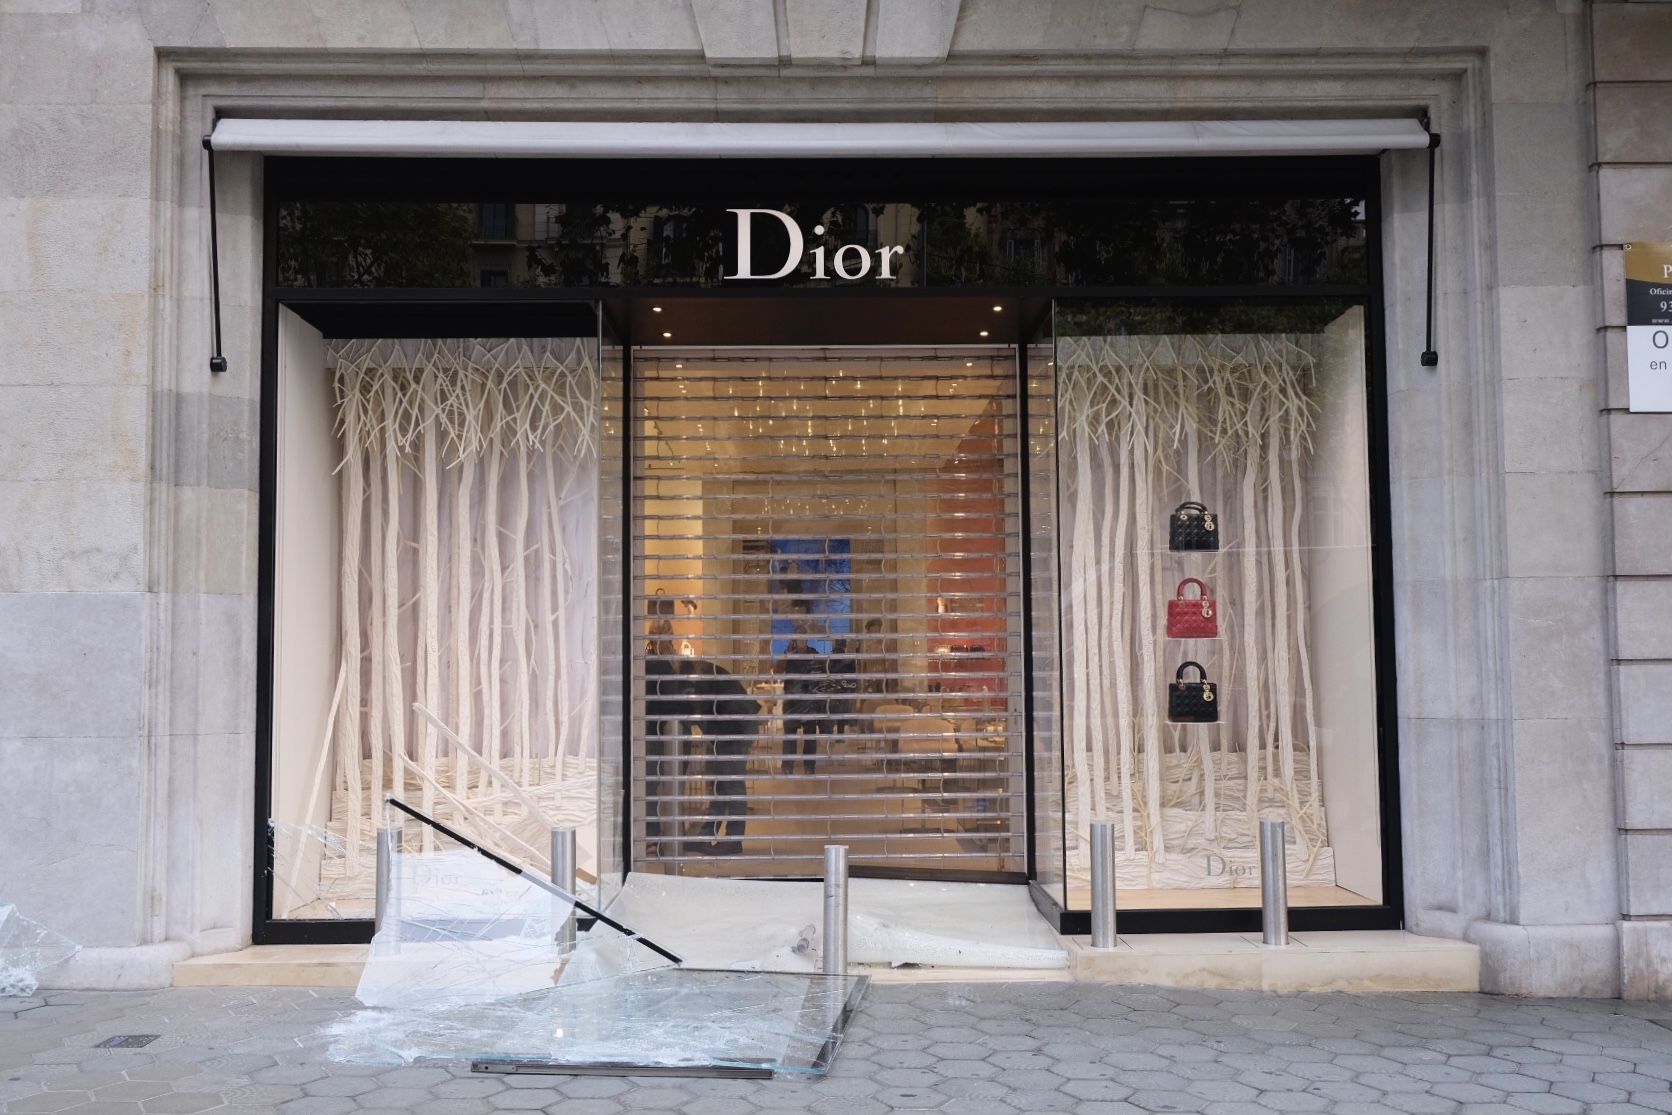 Asalto tienda Dior Passeig de Gracia / Carlos Baglietto